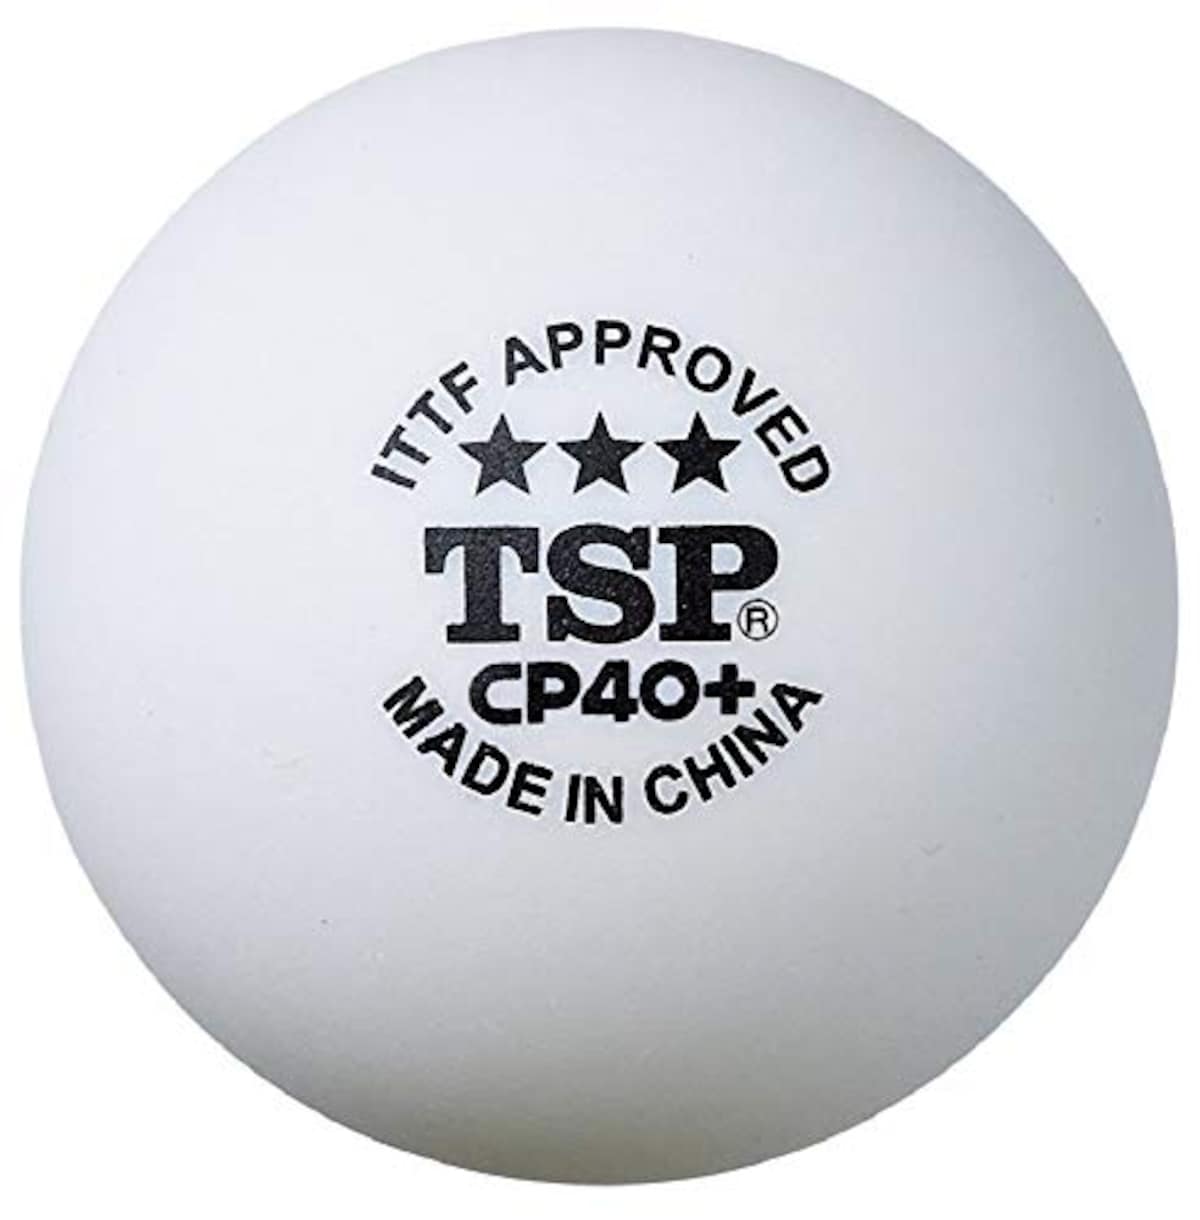 TSP CP40+ 3スターボール